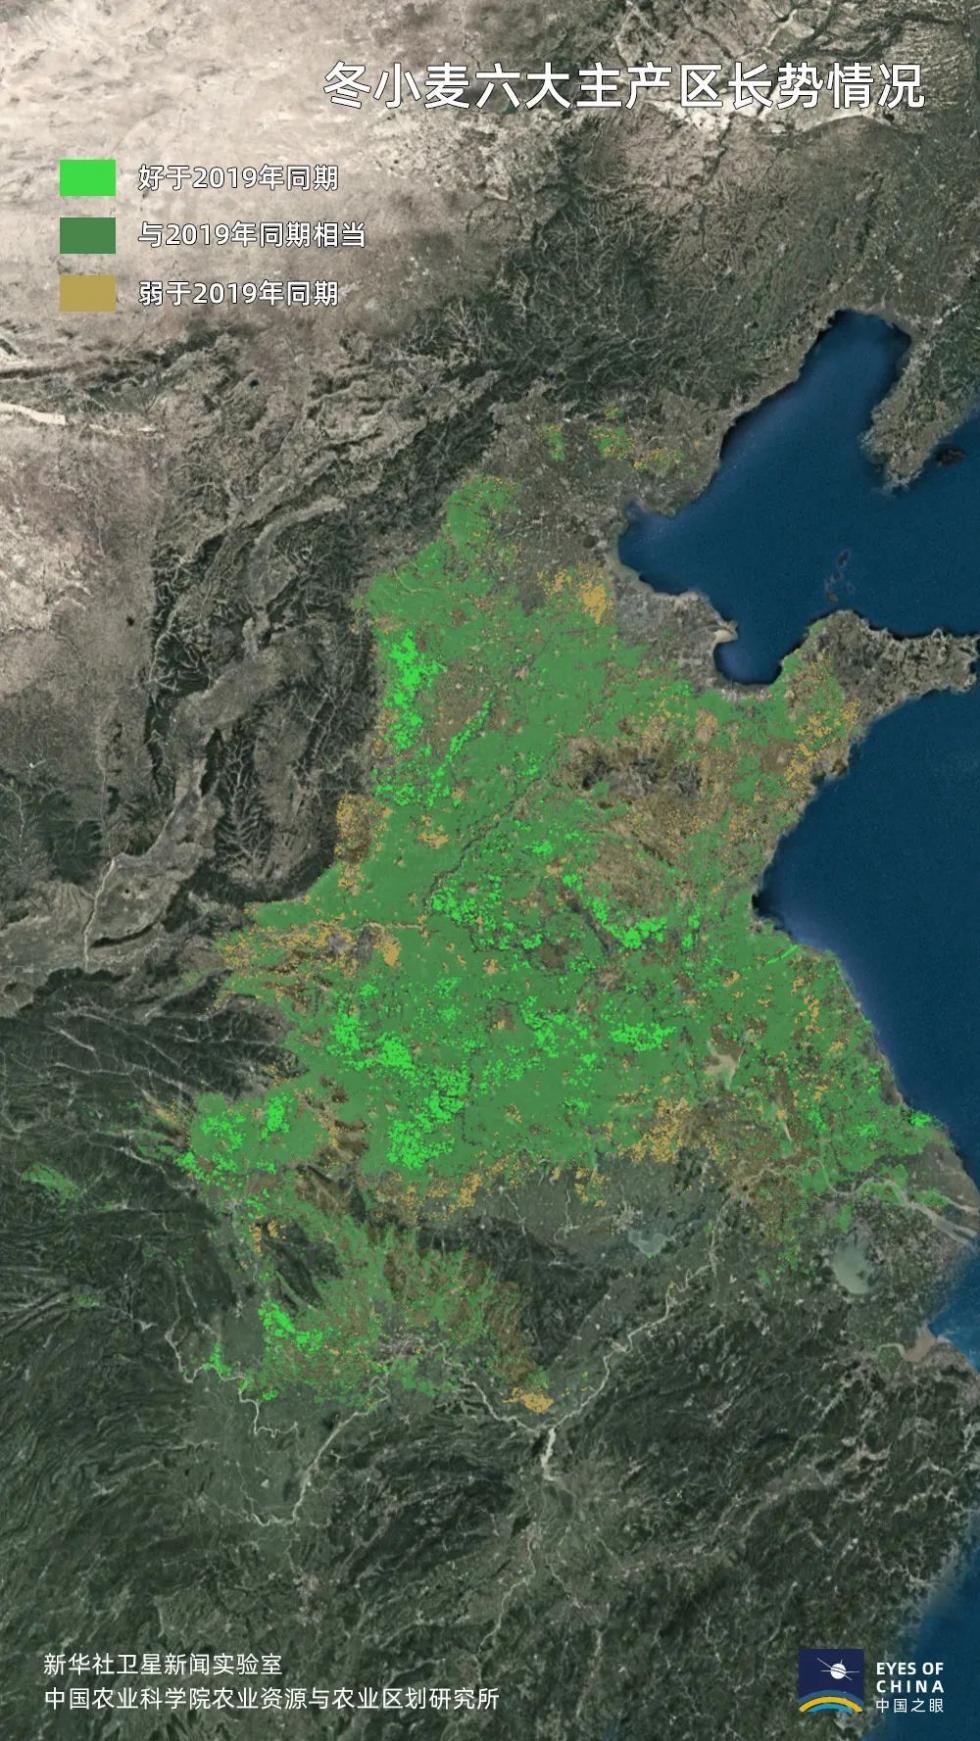 卫星发现一个信号中国耕地正在绿起来